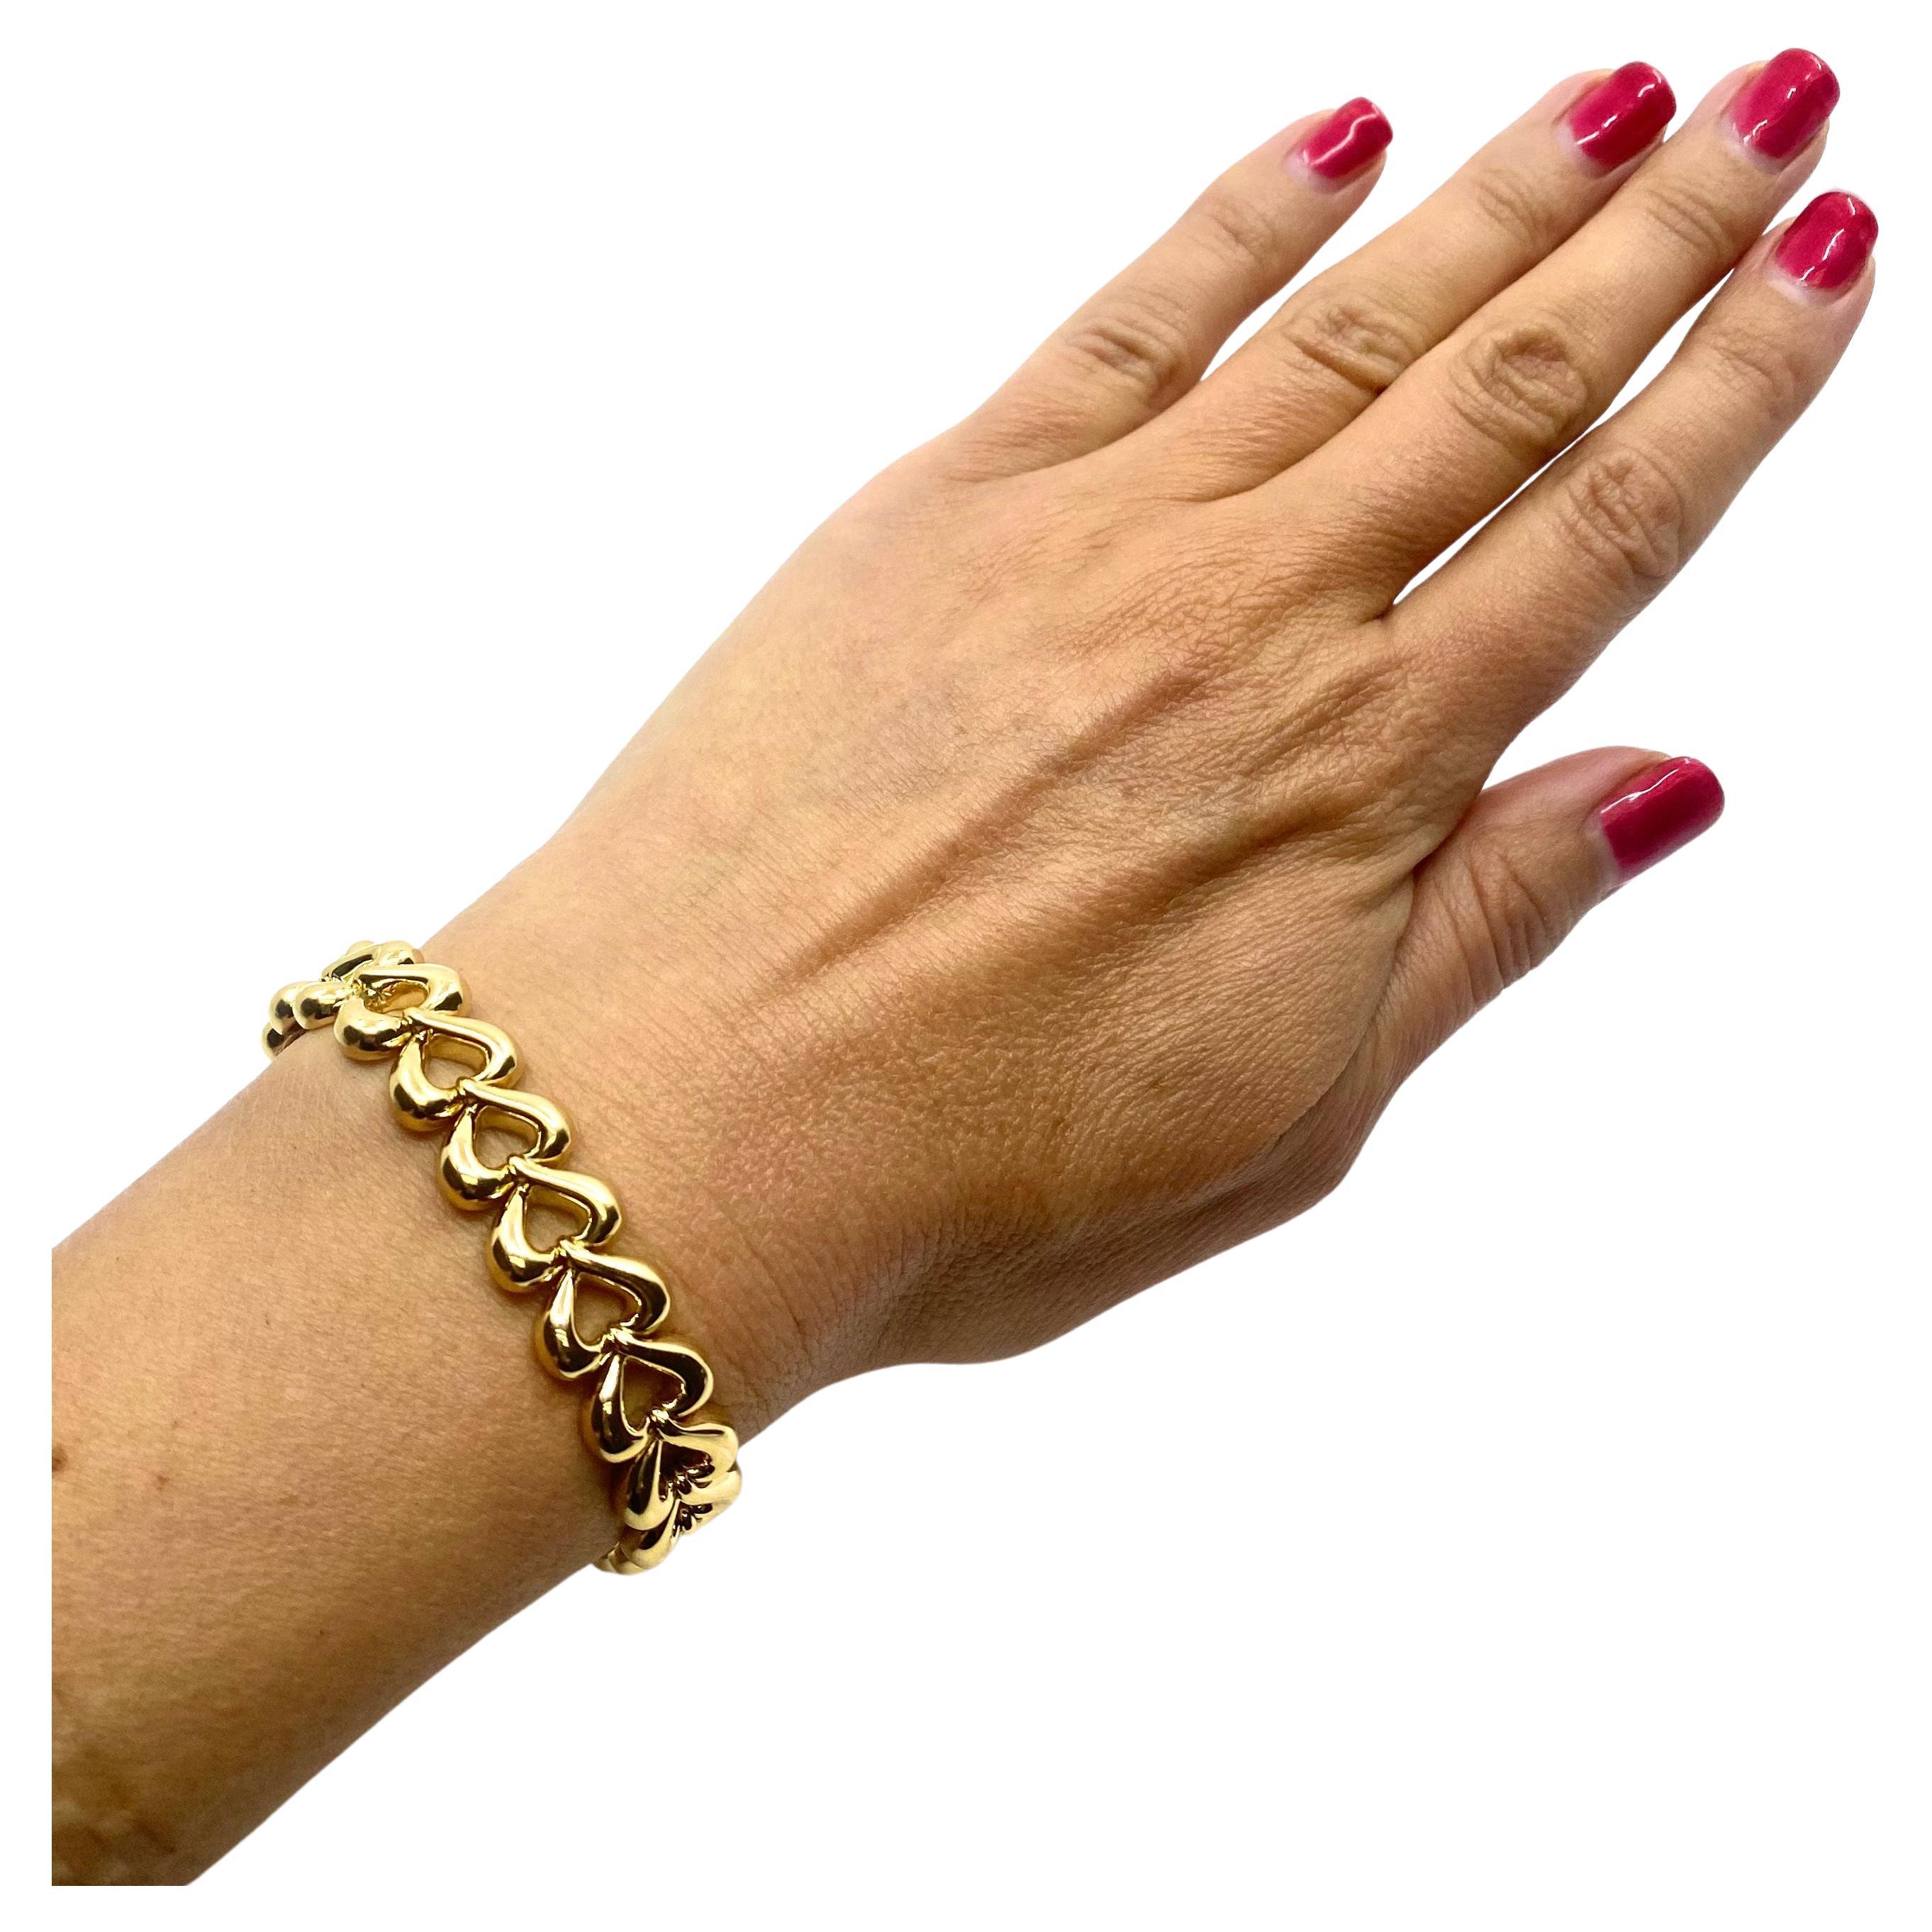 Ein glänzendes Armband von Van Cleef & Arpels aus 18-karätigem Gold, das aus herzförmigen Gliedern besteht. Es ist ein minimalistisches, aber schickes Stück, das Bände über Gefühle spricht. Die Glieder sind durchbrochen und die Schließe ist mit